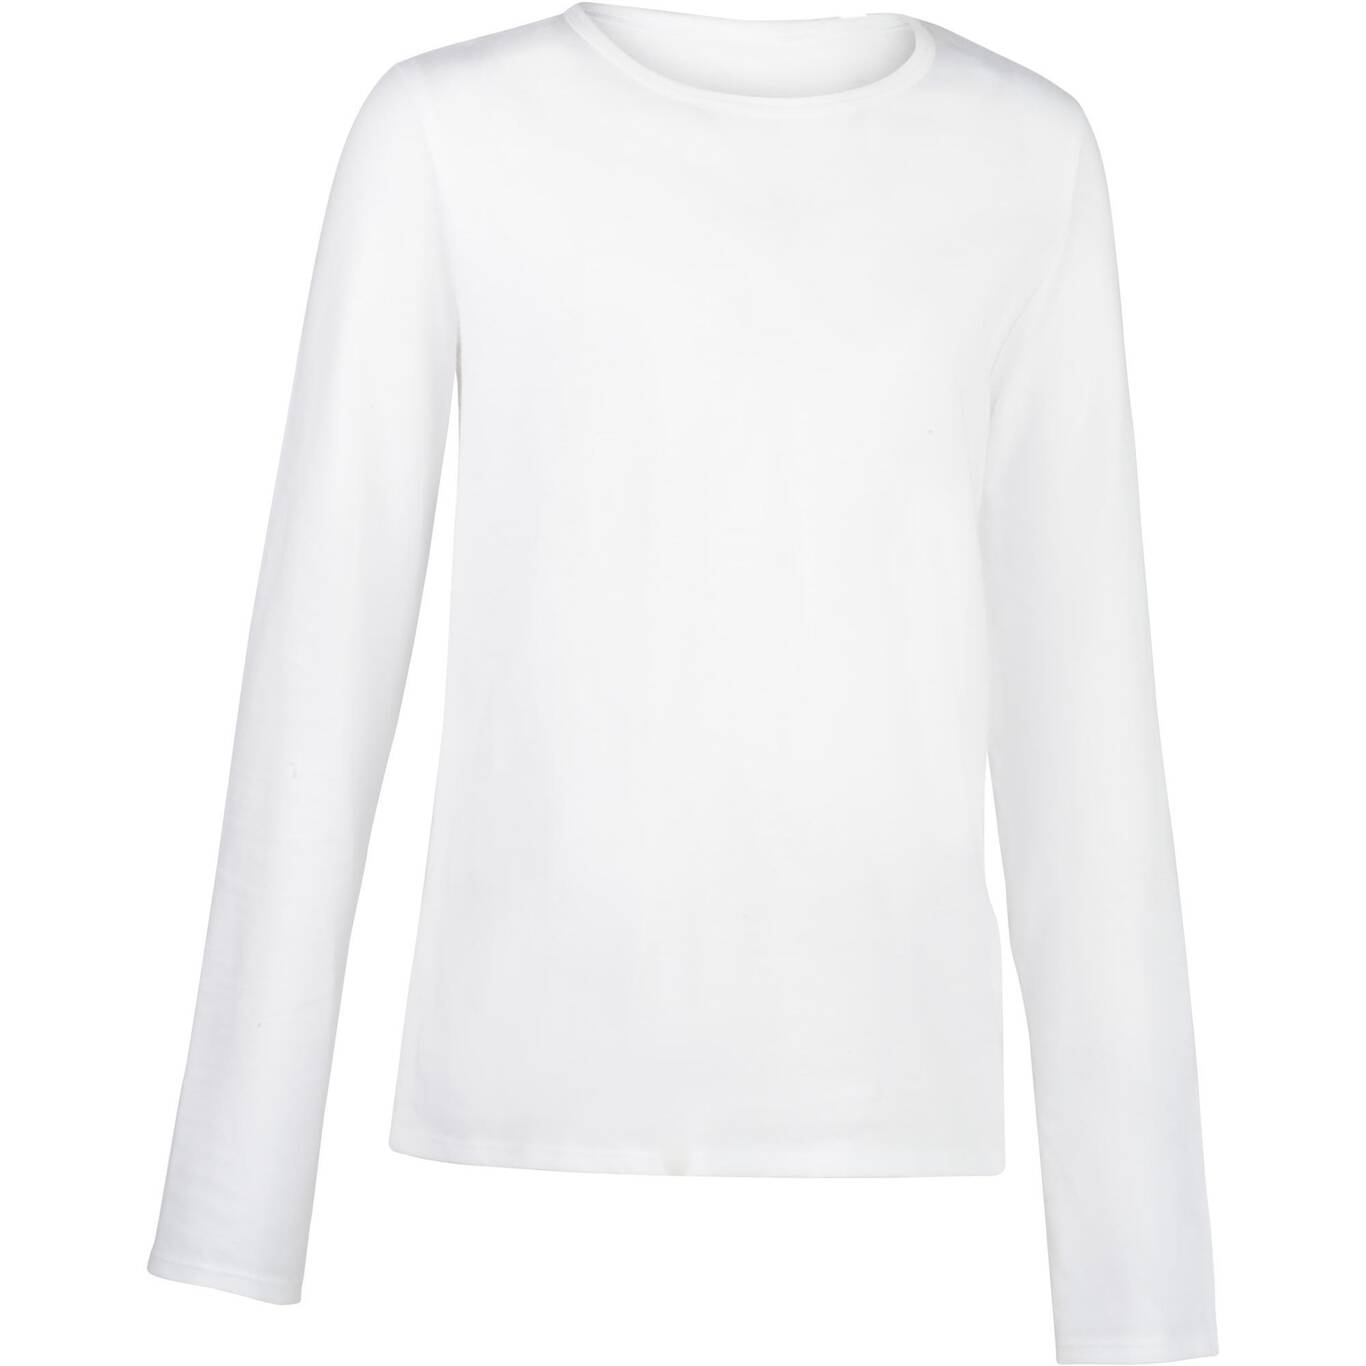 Kids' Basic Long-Sleeved Cotton T-Shirt - White